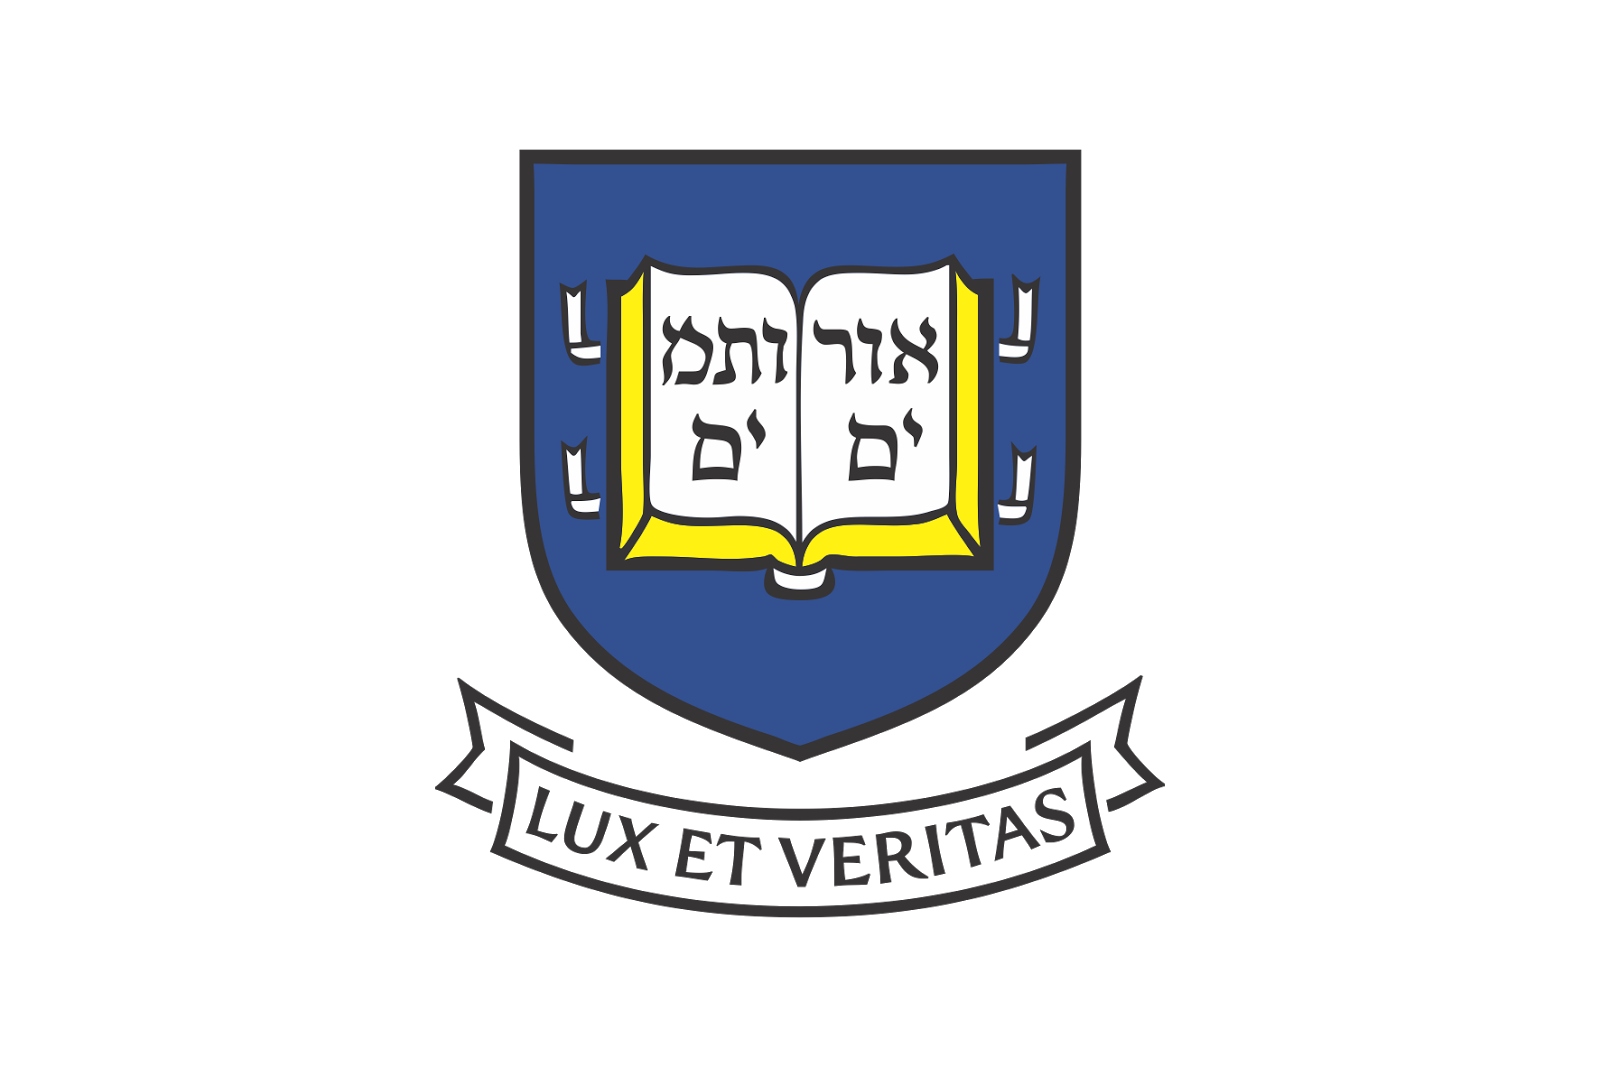 Yale University Logo